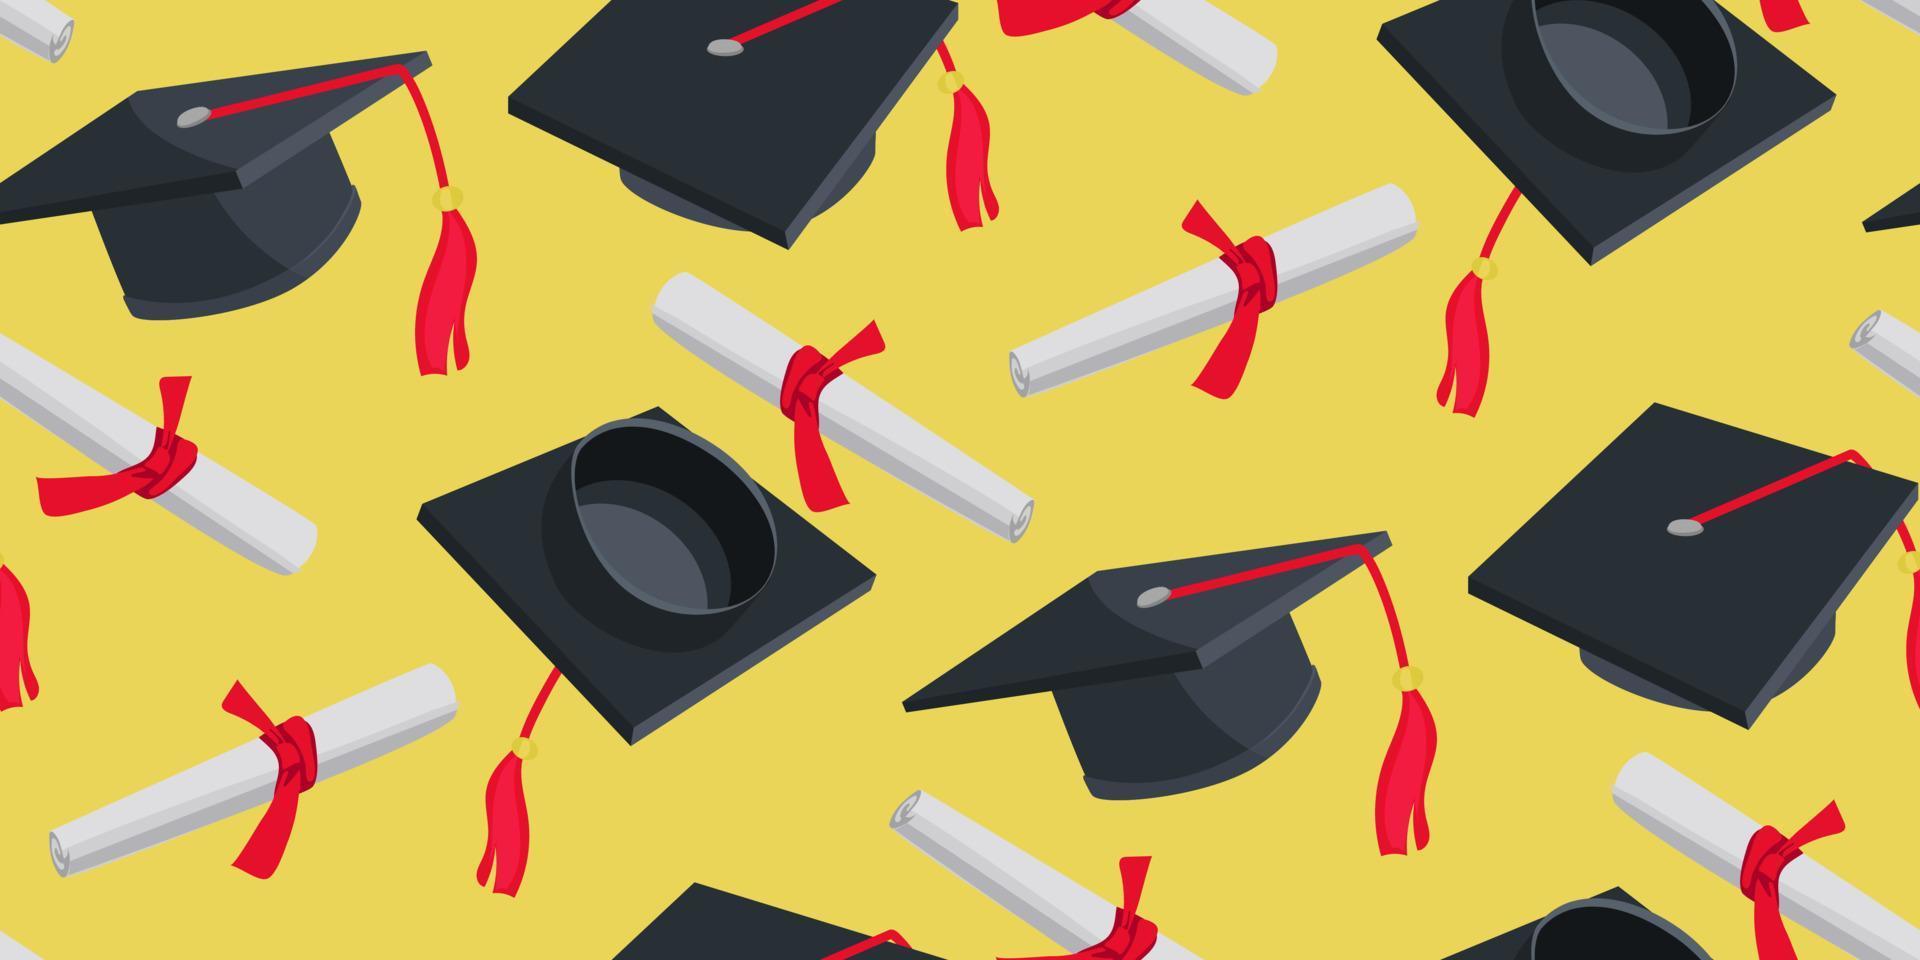 un patrón de sombreros de graduación y diplomas para graduarse de la escuela secundaria o la universidad. clase 2023 en colores negro y rojo. Felicitaciones a los graduados de la postal de fondo de 2023. embalaje vector